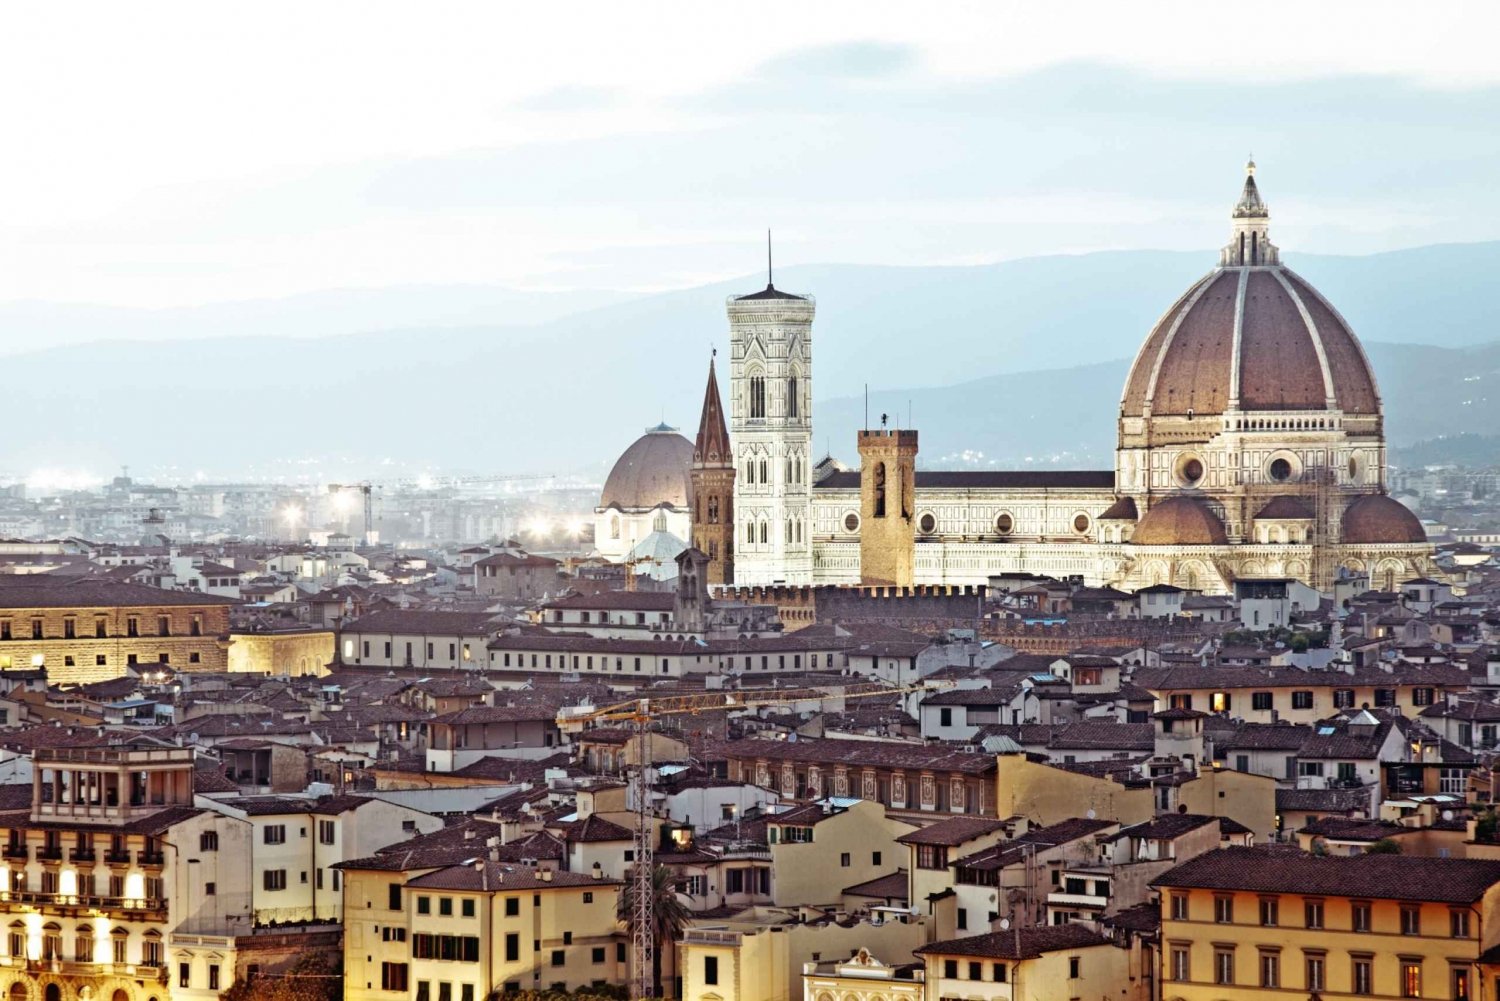 Florence : Tour d'escalade du dôme de Brunelleschi